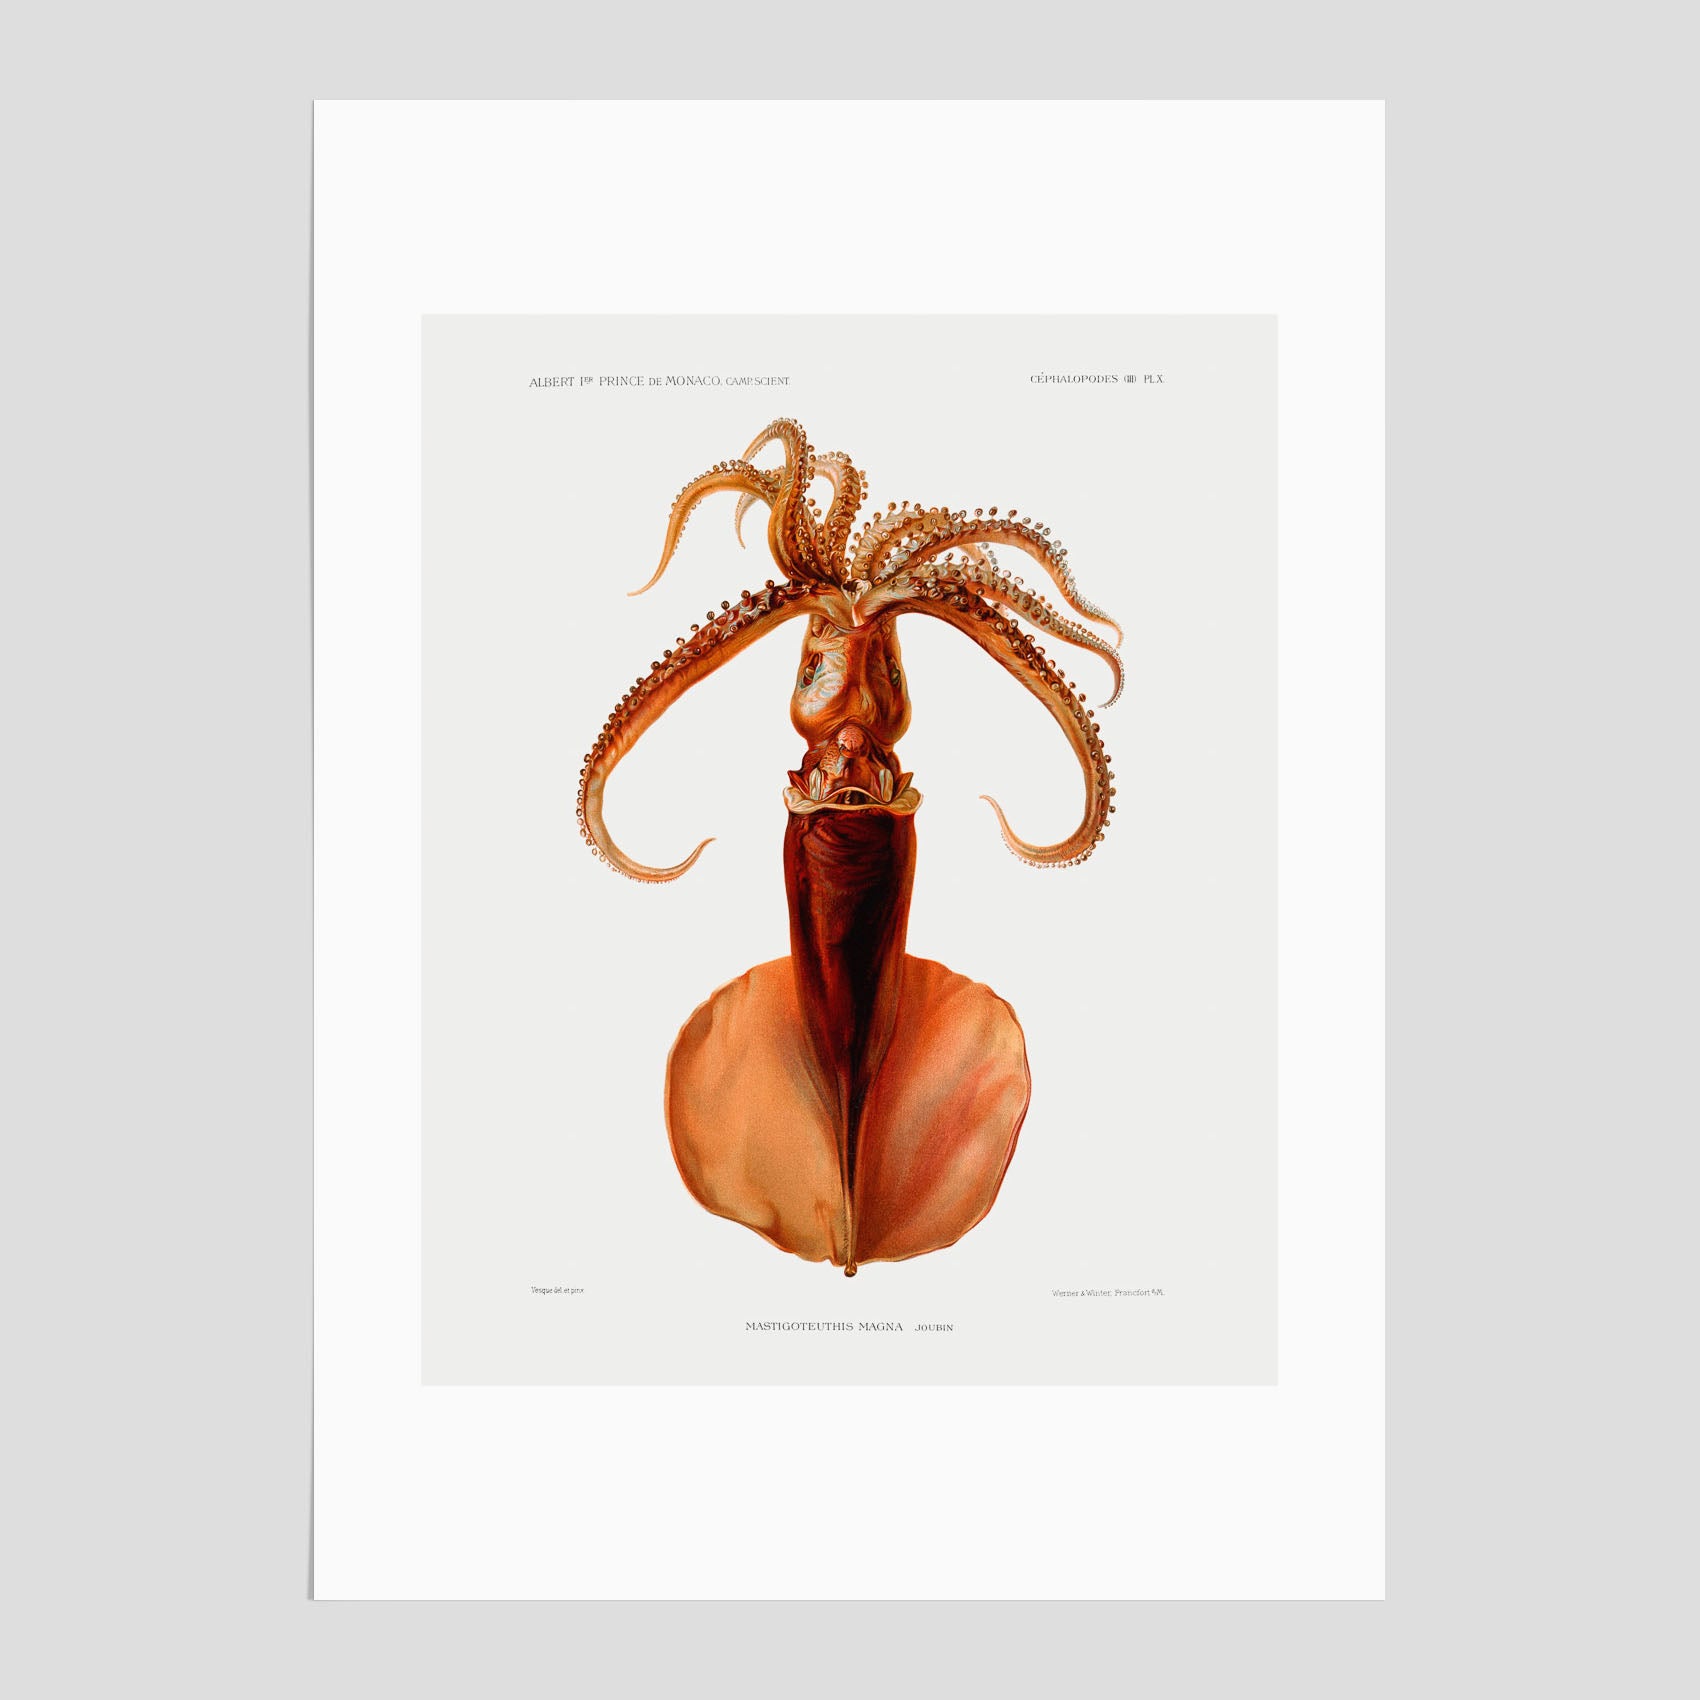 En vintageposter med en illustration av en bläckfisk från boken "Résultats des campagnes scientifiques du prince de Monaco"